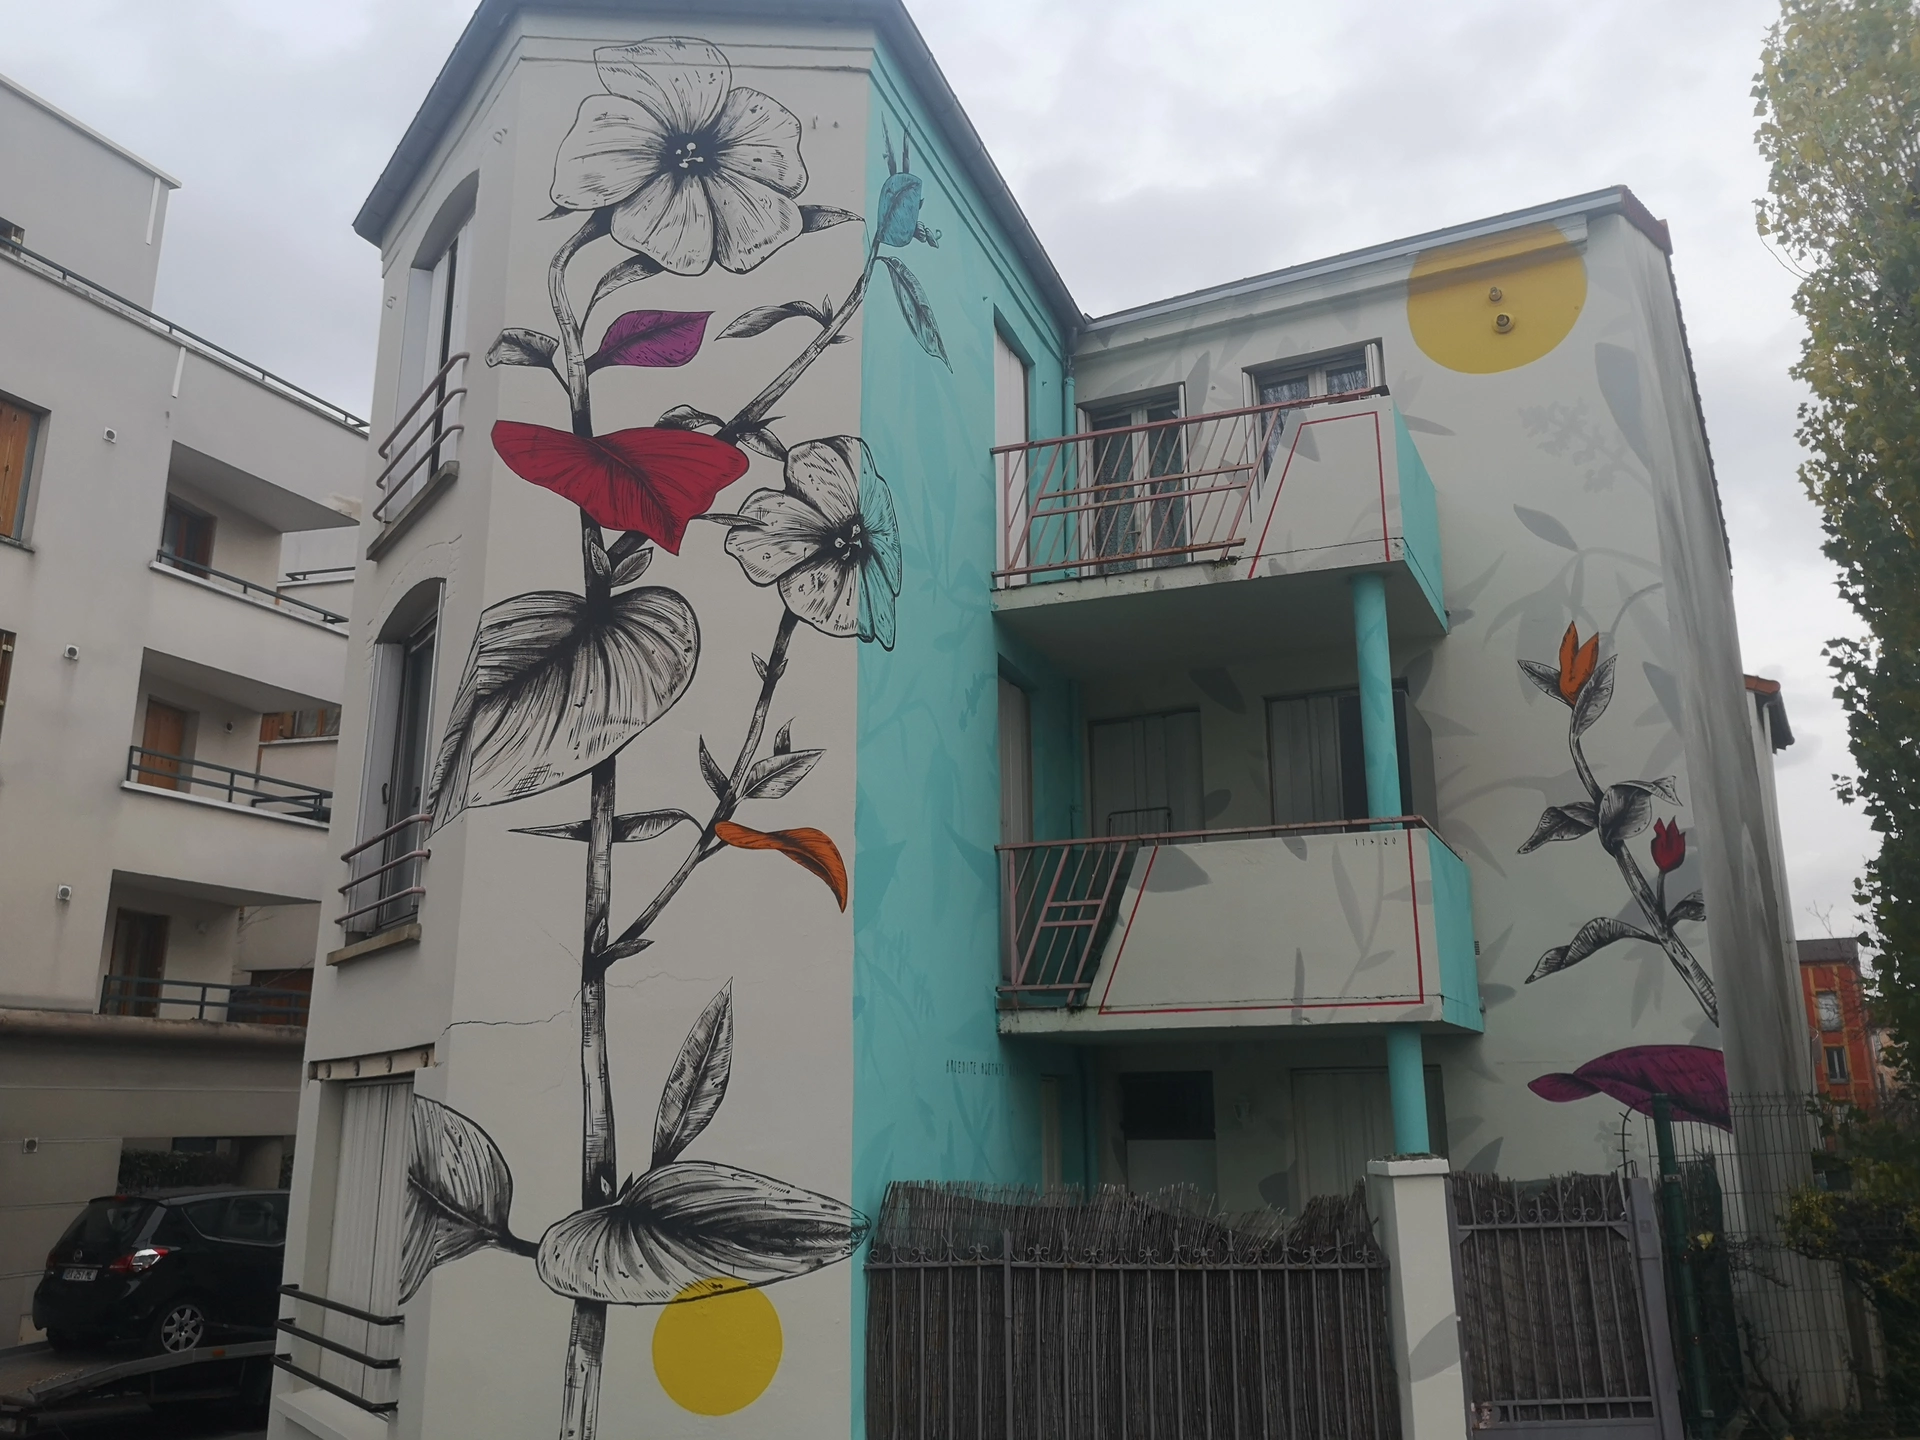 Oeuvre de Street Art réalisée par Fabio Petani à Saint-Denis